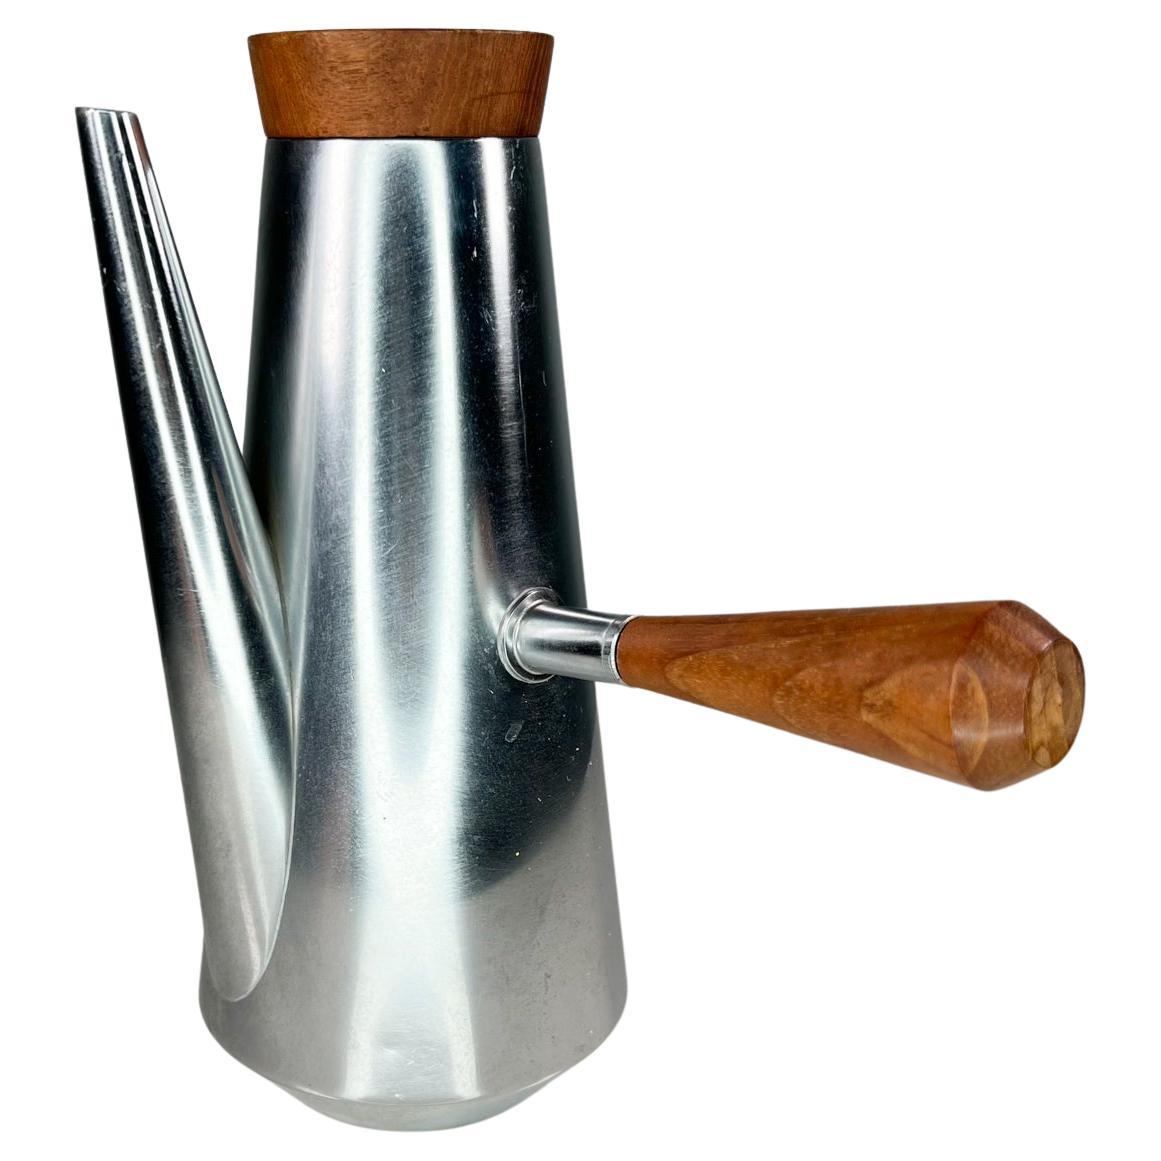 1960er Jahre Stil von Kalmar Modern silberner Edelstahl-Kaffeekessel mit konischem Korpus, Teakholz-Akzent und Brandstempel auf der Unterseite. 
Herstellerstempel auf der Unterseite: Hergestellt in Italien.
Maße: 9 hoch x 8 breit x 5